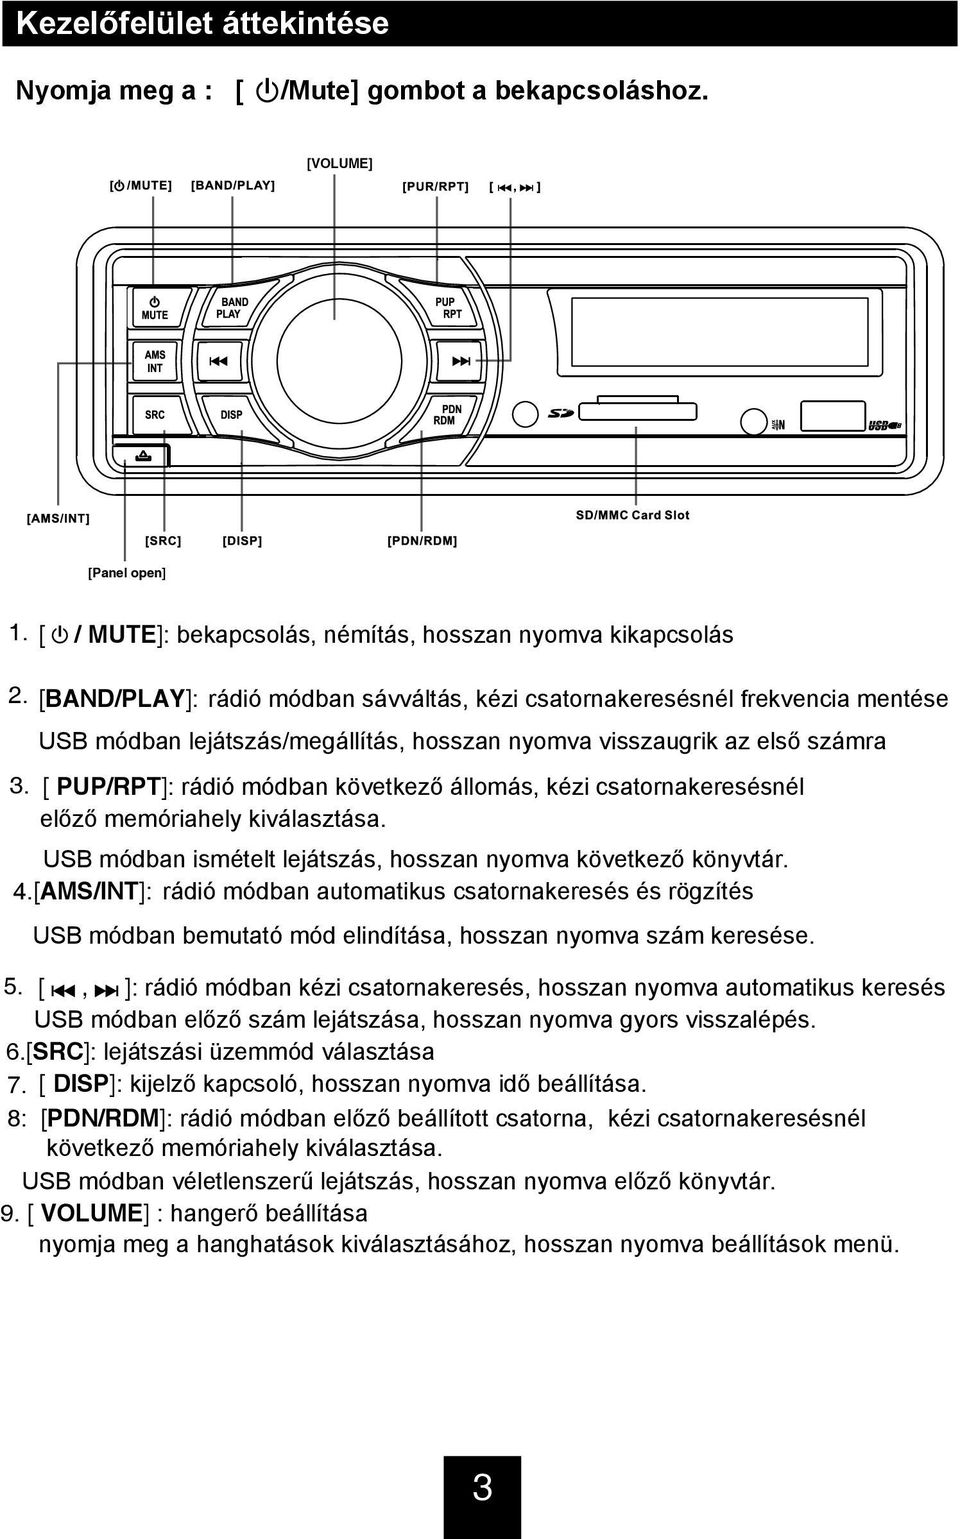 CAU-7180B. iphone/usb/sd/mmc Hi-Fi autó fejegység RÖVID HASZNÁLATI ÚTMUTATÓ  - PDF Ingyenes letöltés